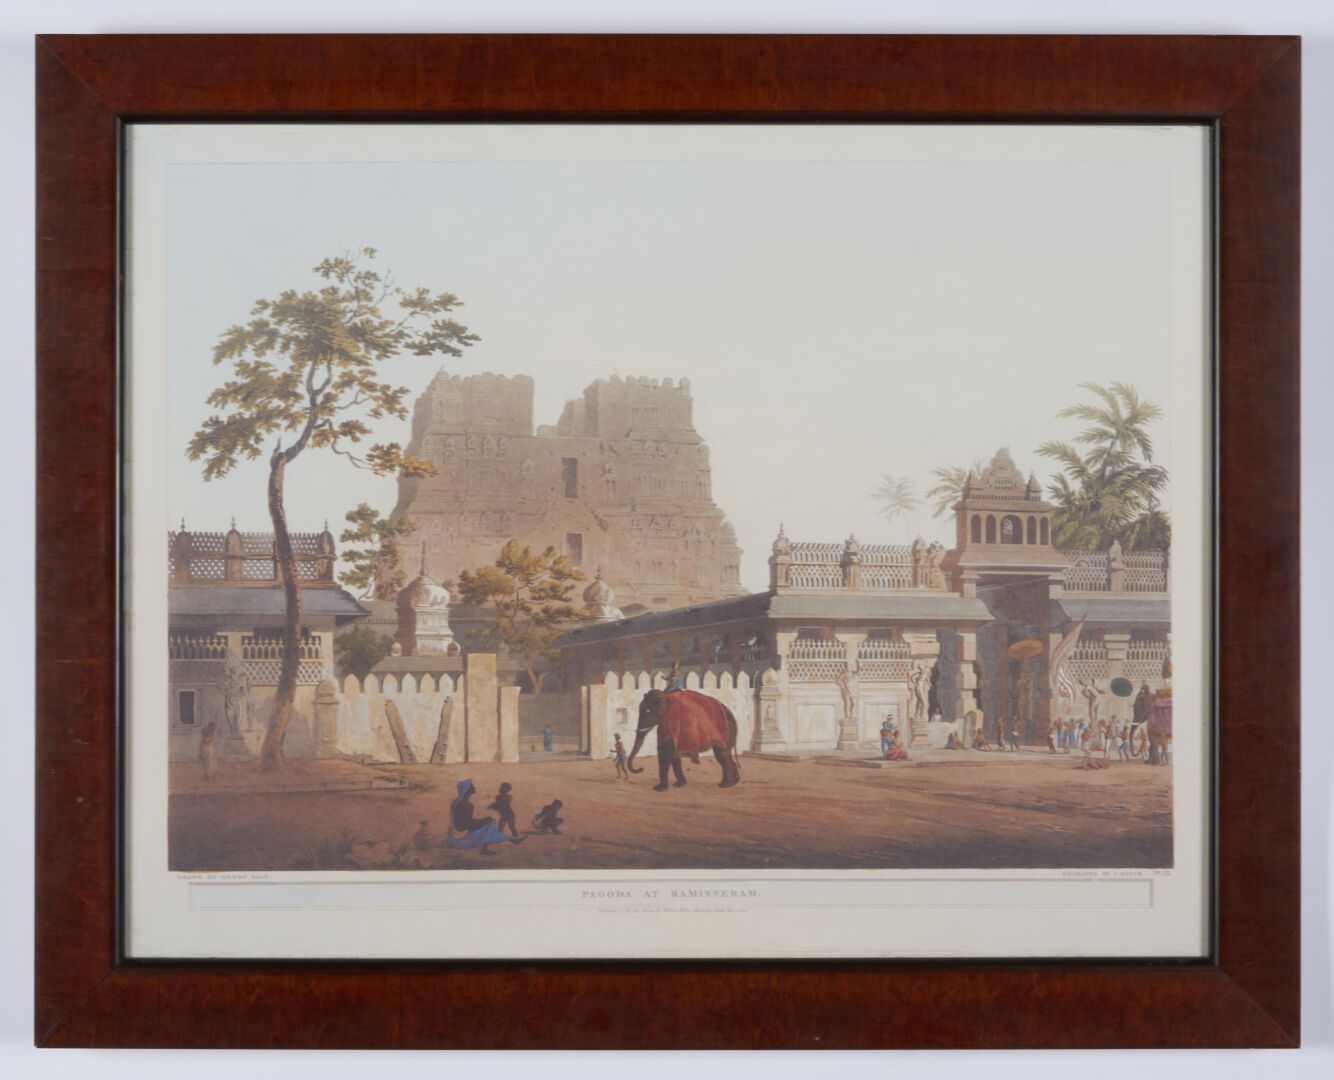 Null Otto stampe a colori inglesi sul tema dell'India - 45x59